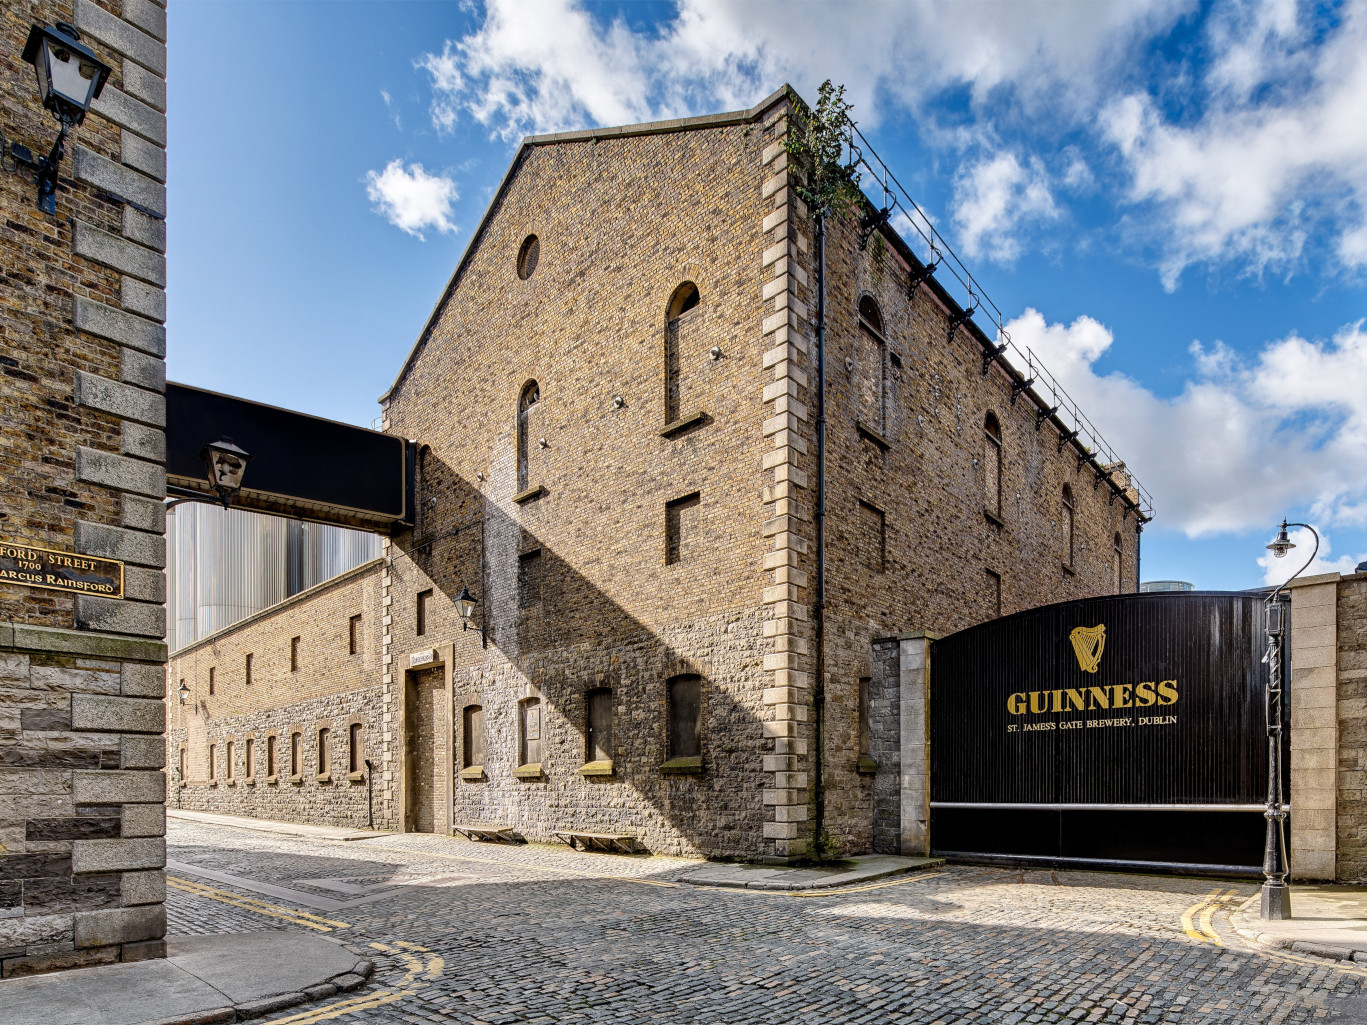 Visit the Guinness Storehouse